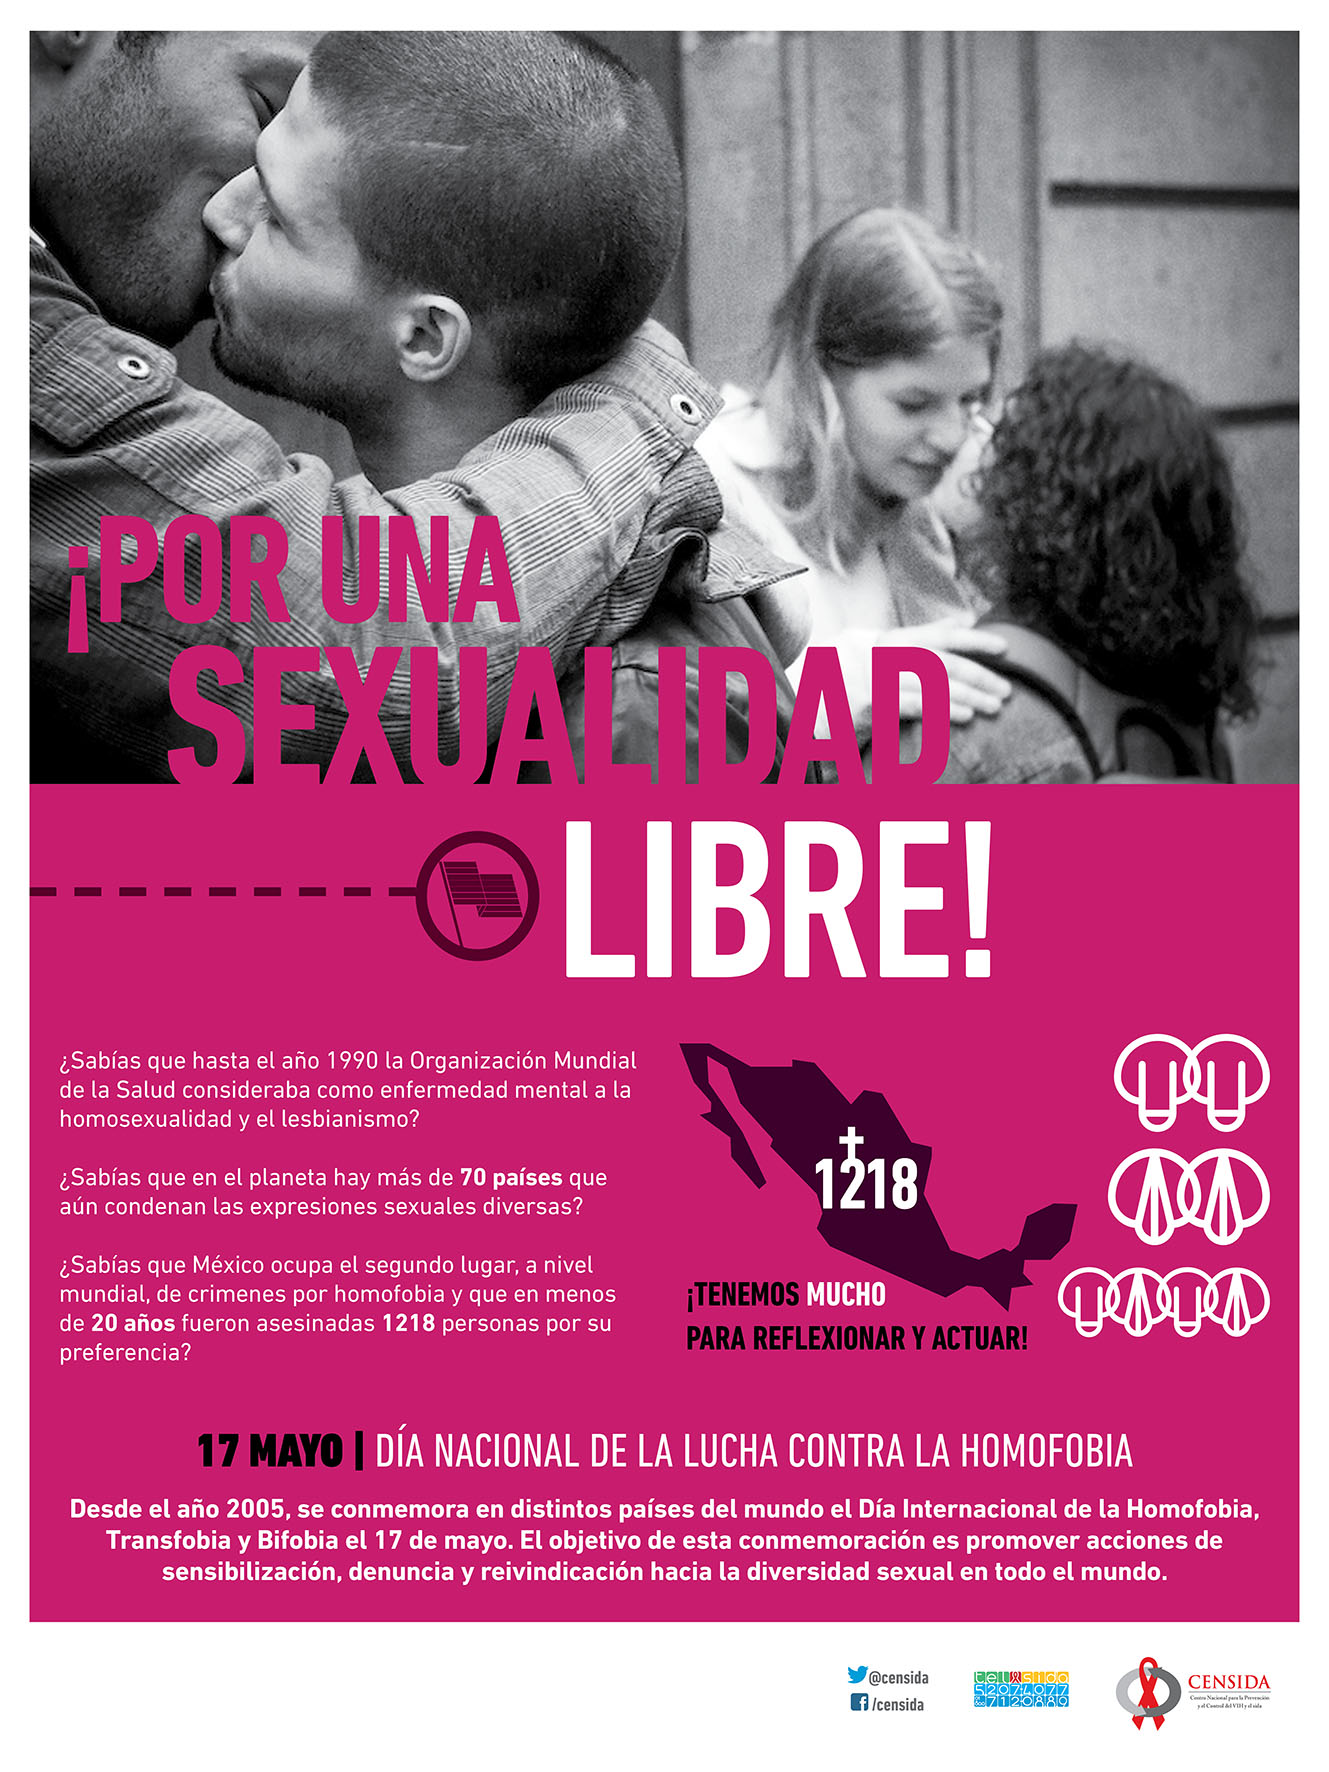 /cms/uploads/image/file/286501/dia_contra_homofobia_-_cartel.jpg